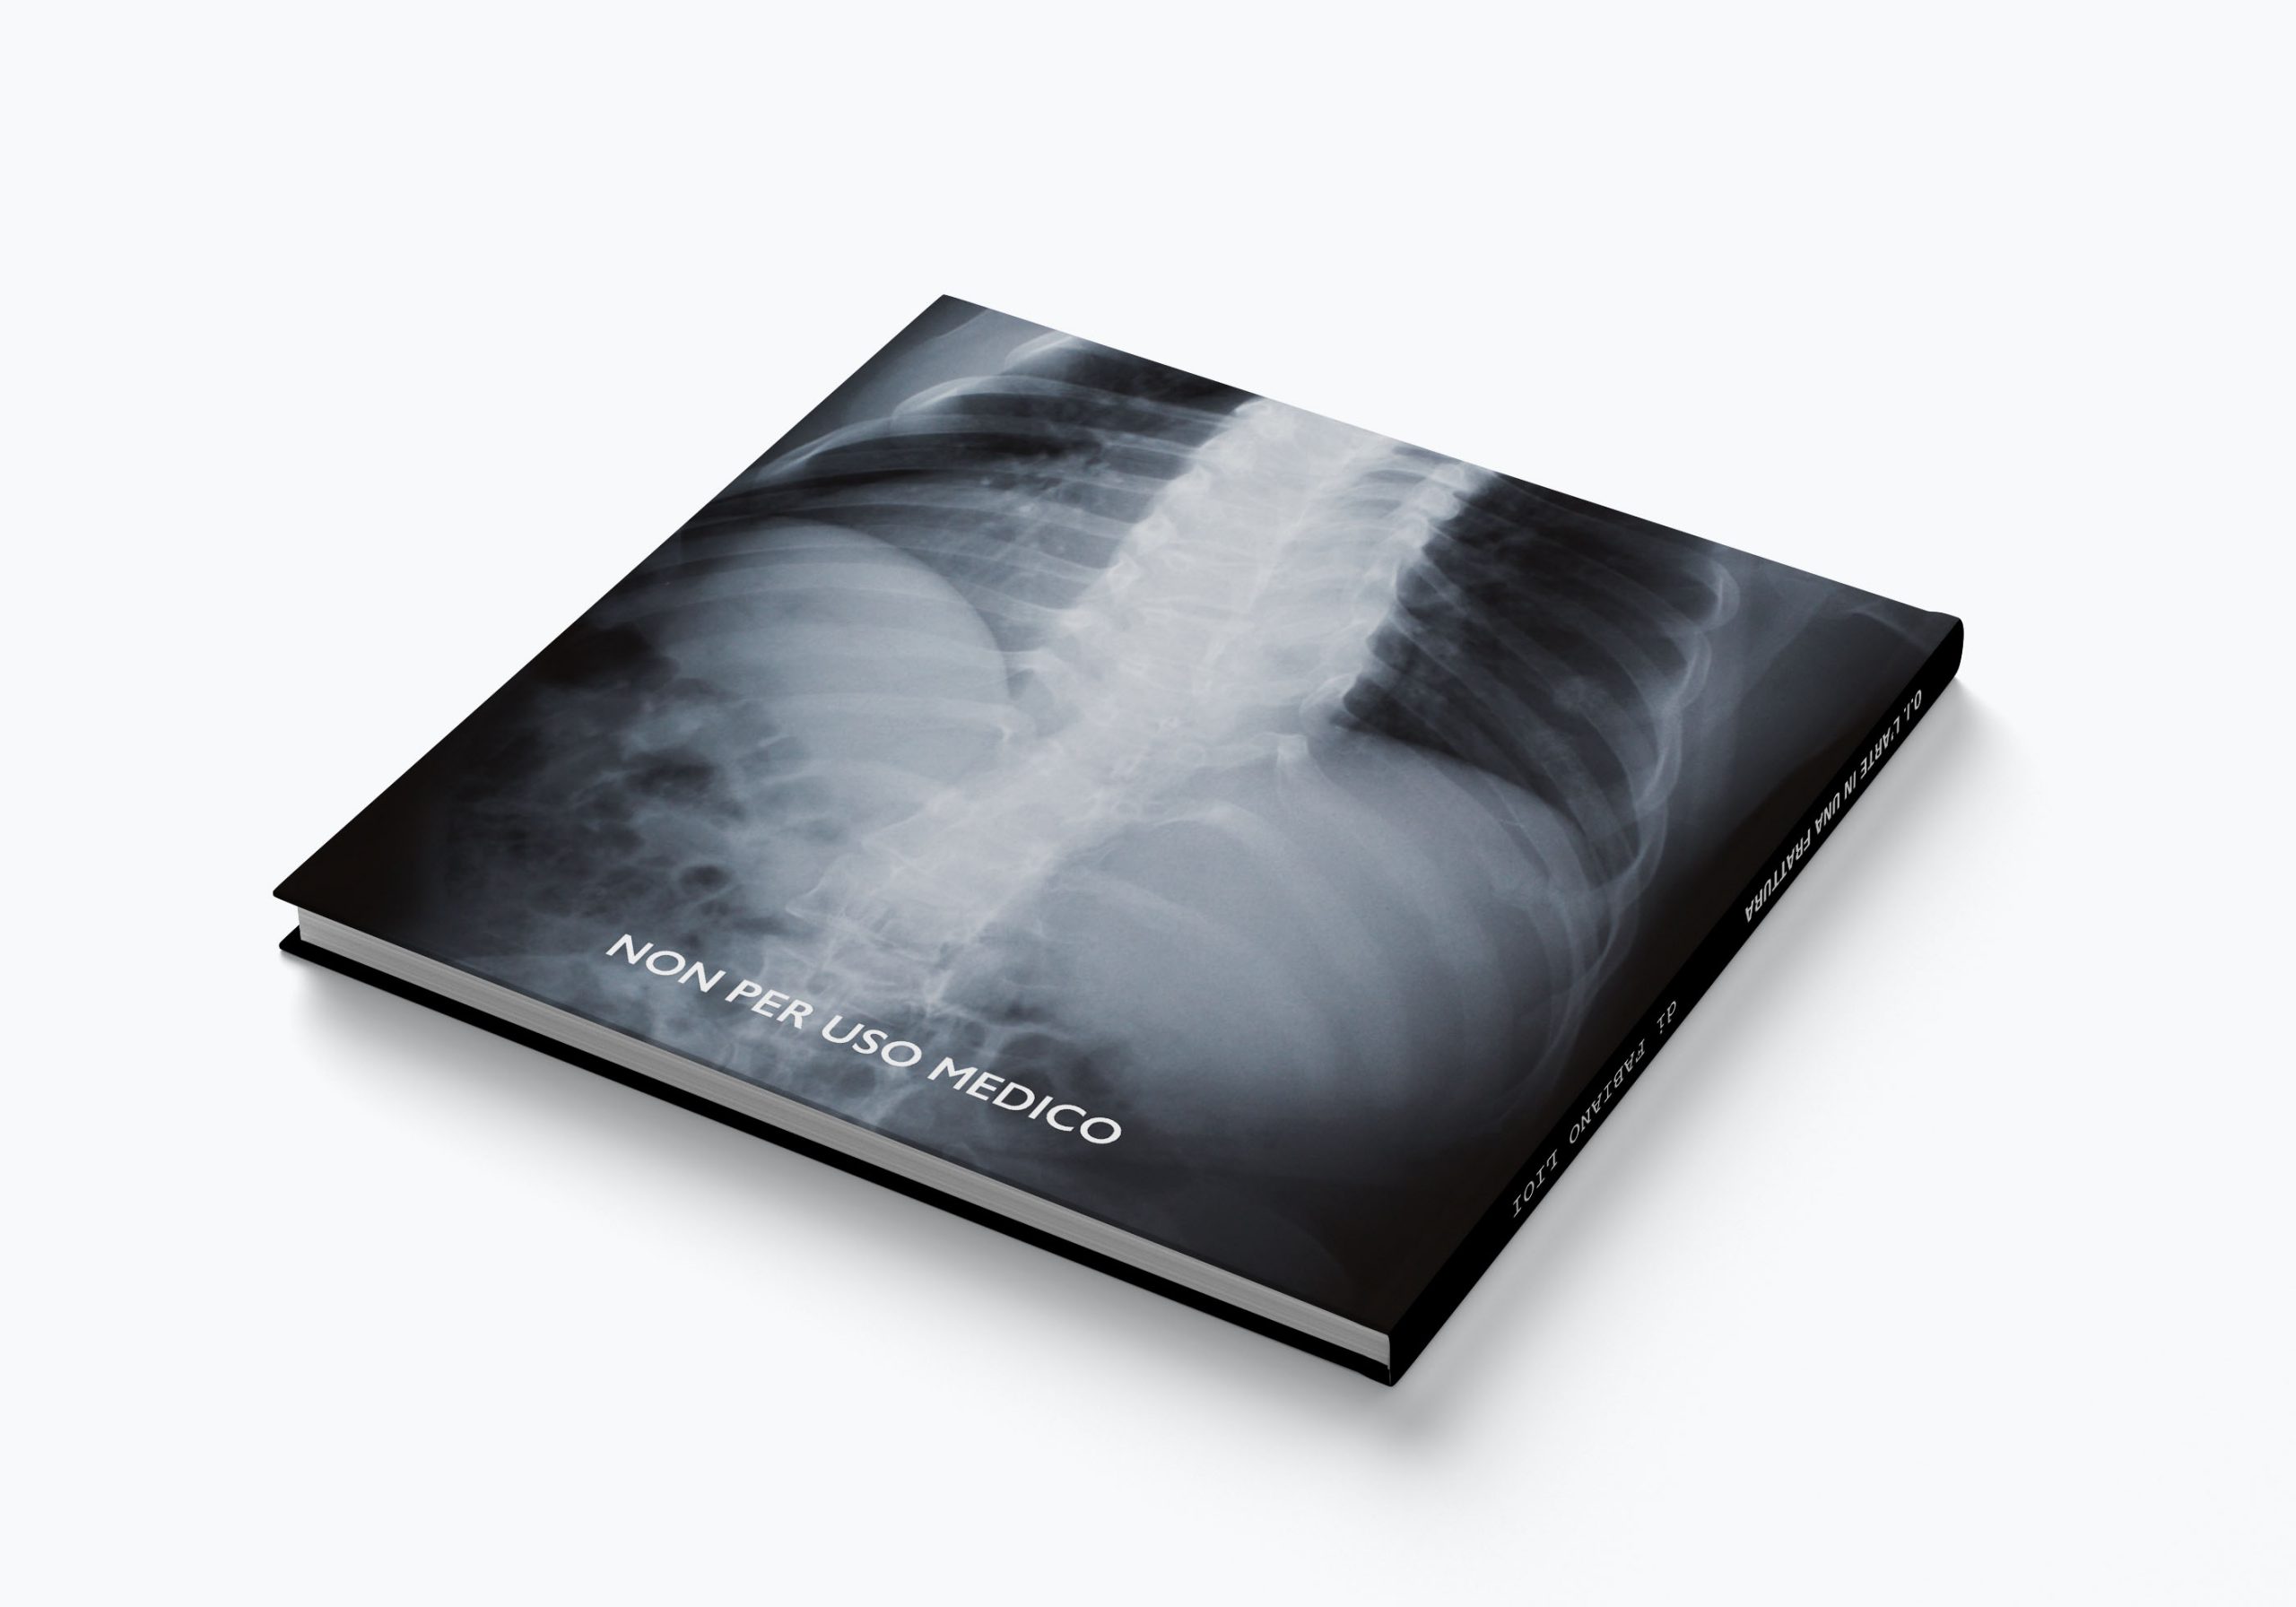 O.I. L'arte in una frattura: la retrocopertina del libro sull'osteogenesi imperfetta